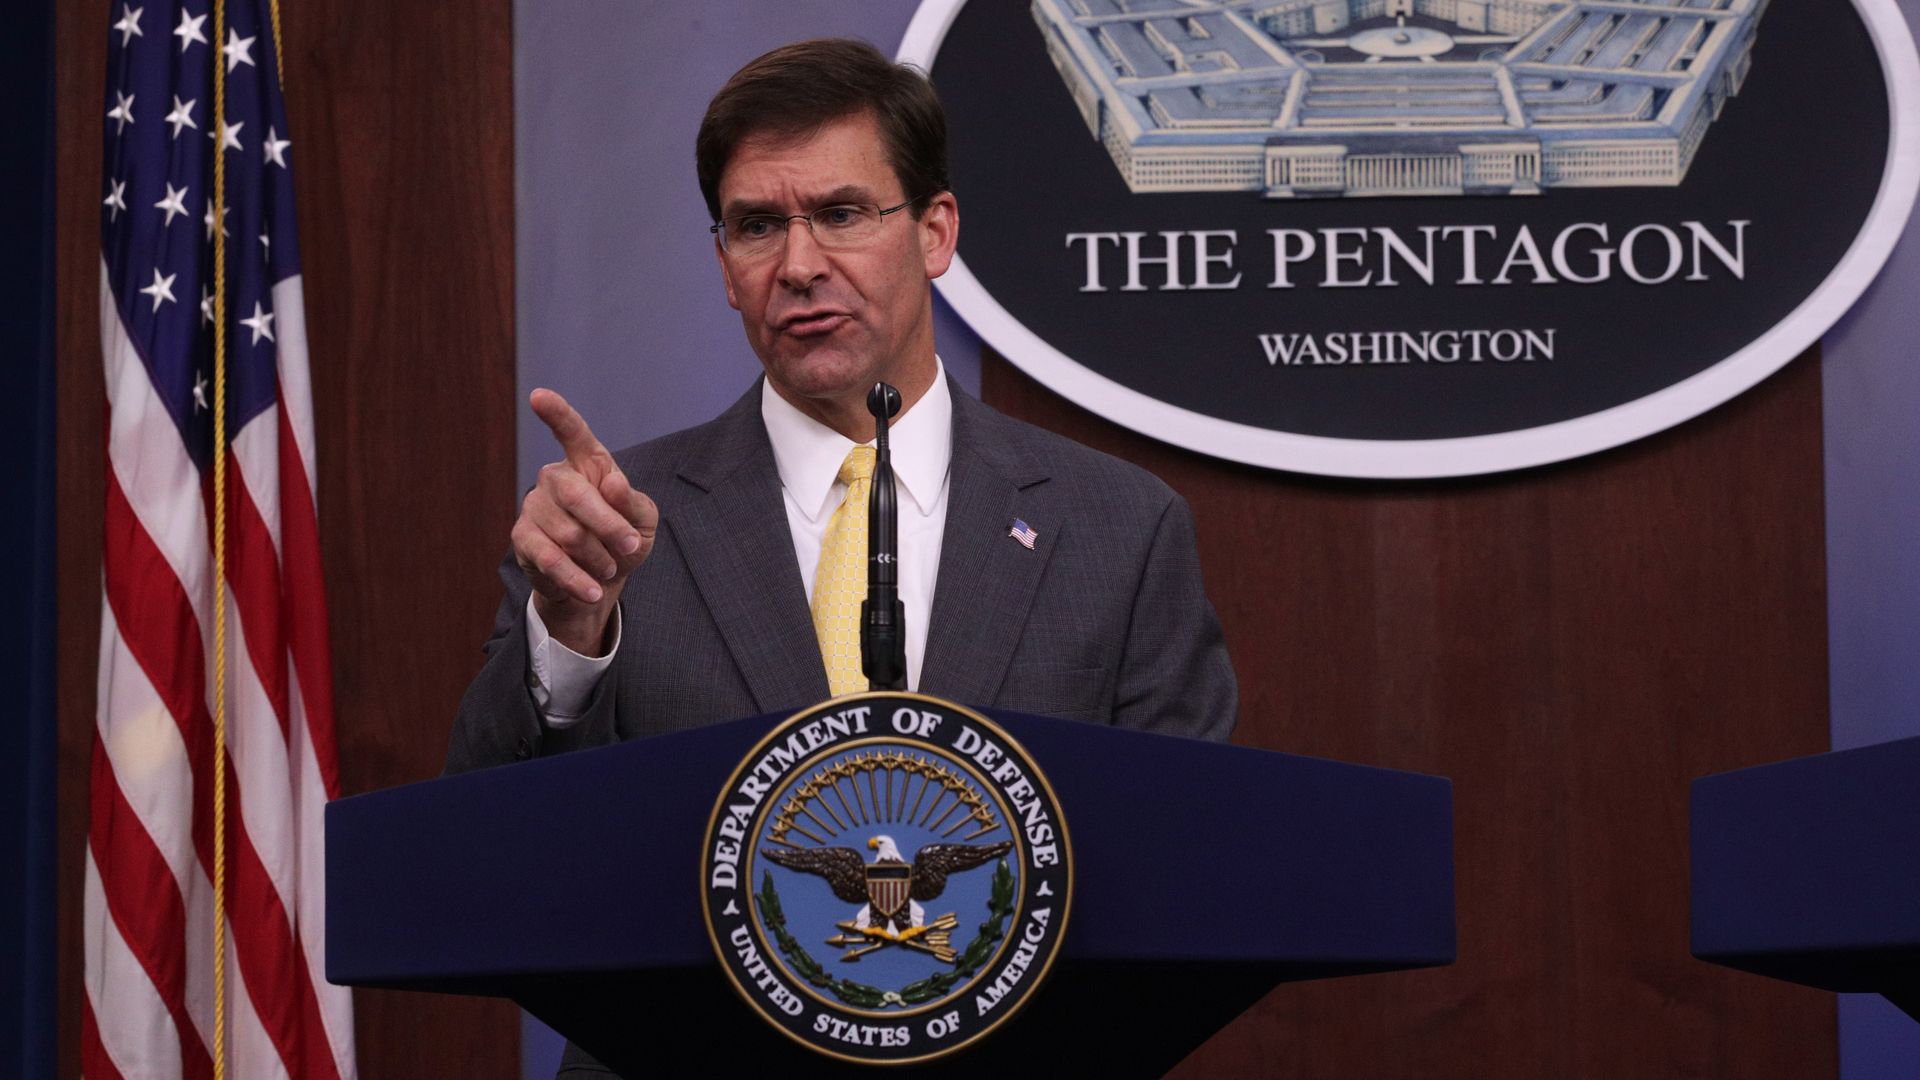 Acting Defense Secretary Mark Esper at Pentagon press conference